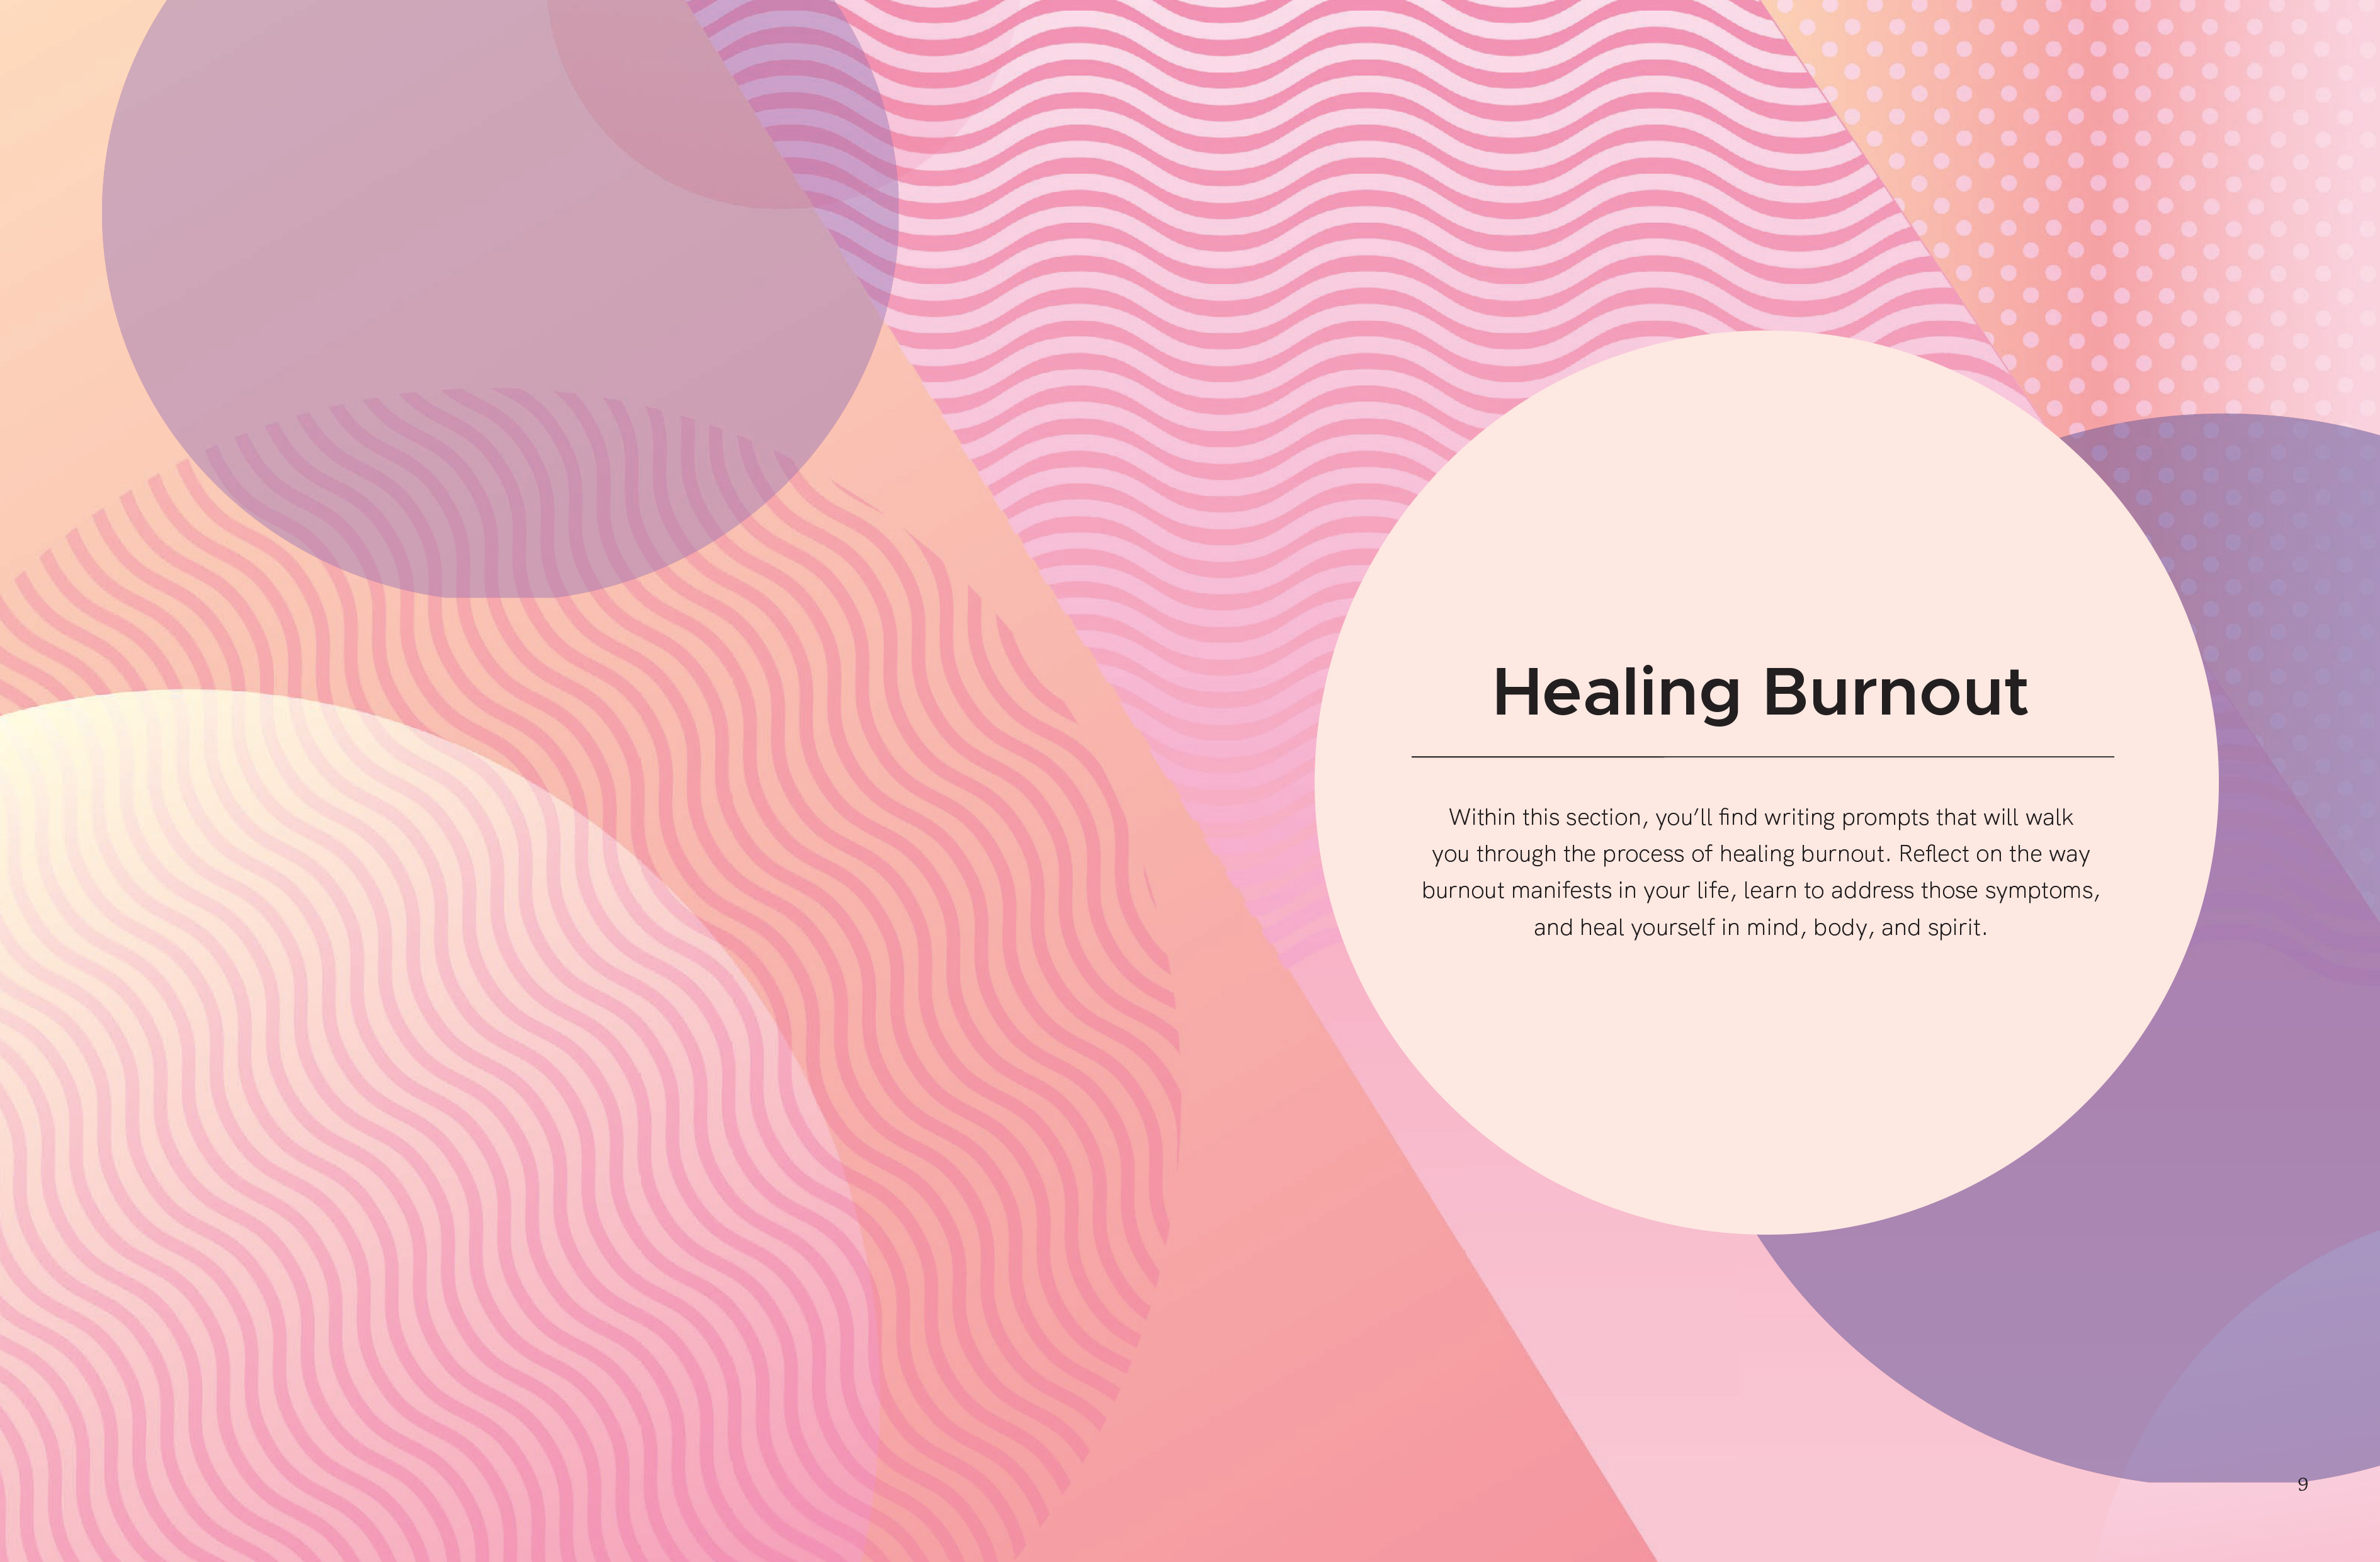 Healing Burnout